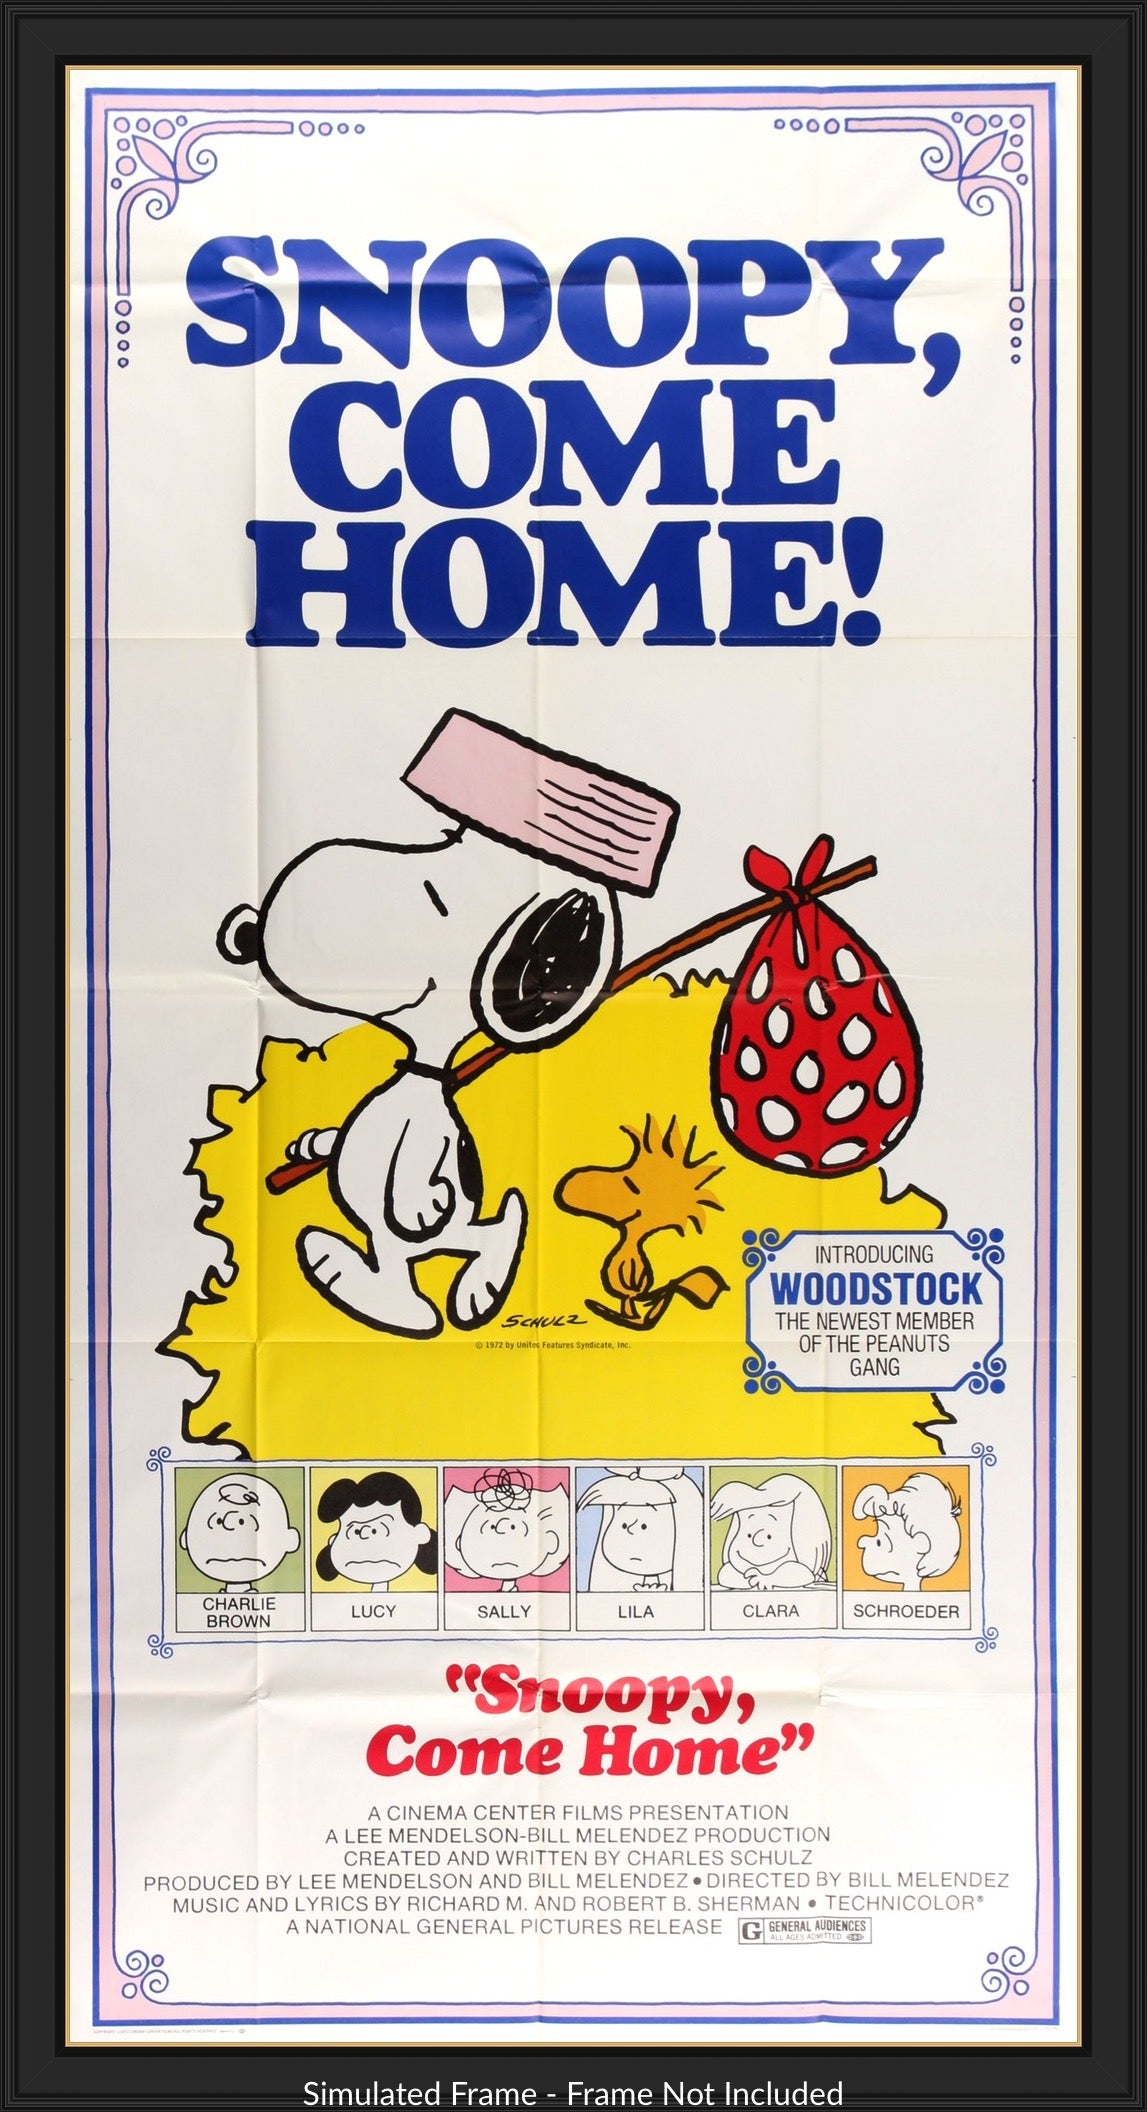 Snoopy Come Home (1972) original movie poster for sale at Original Film Art